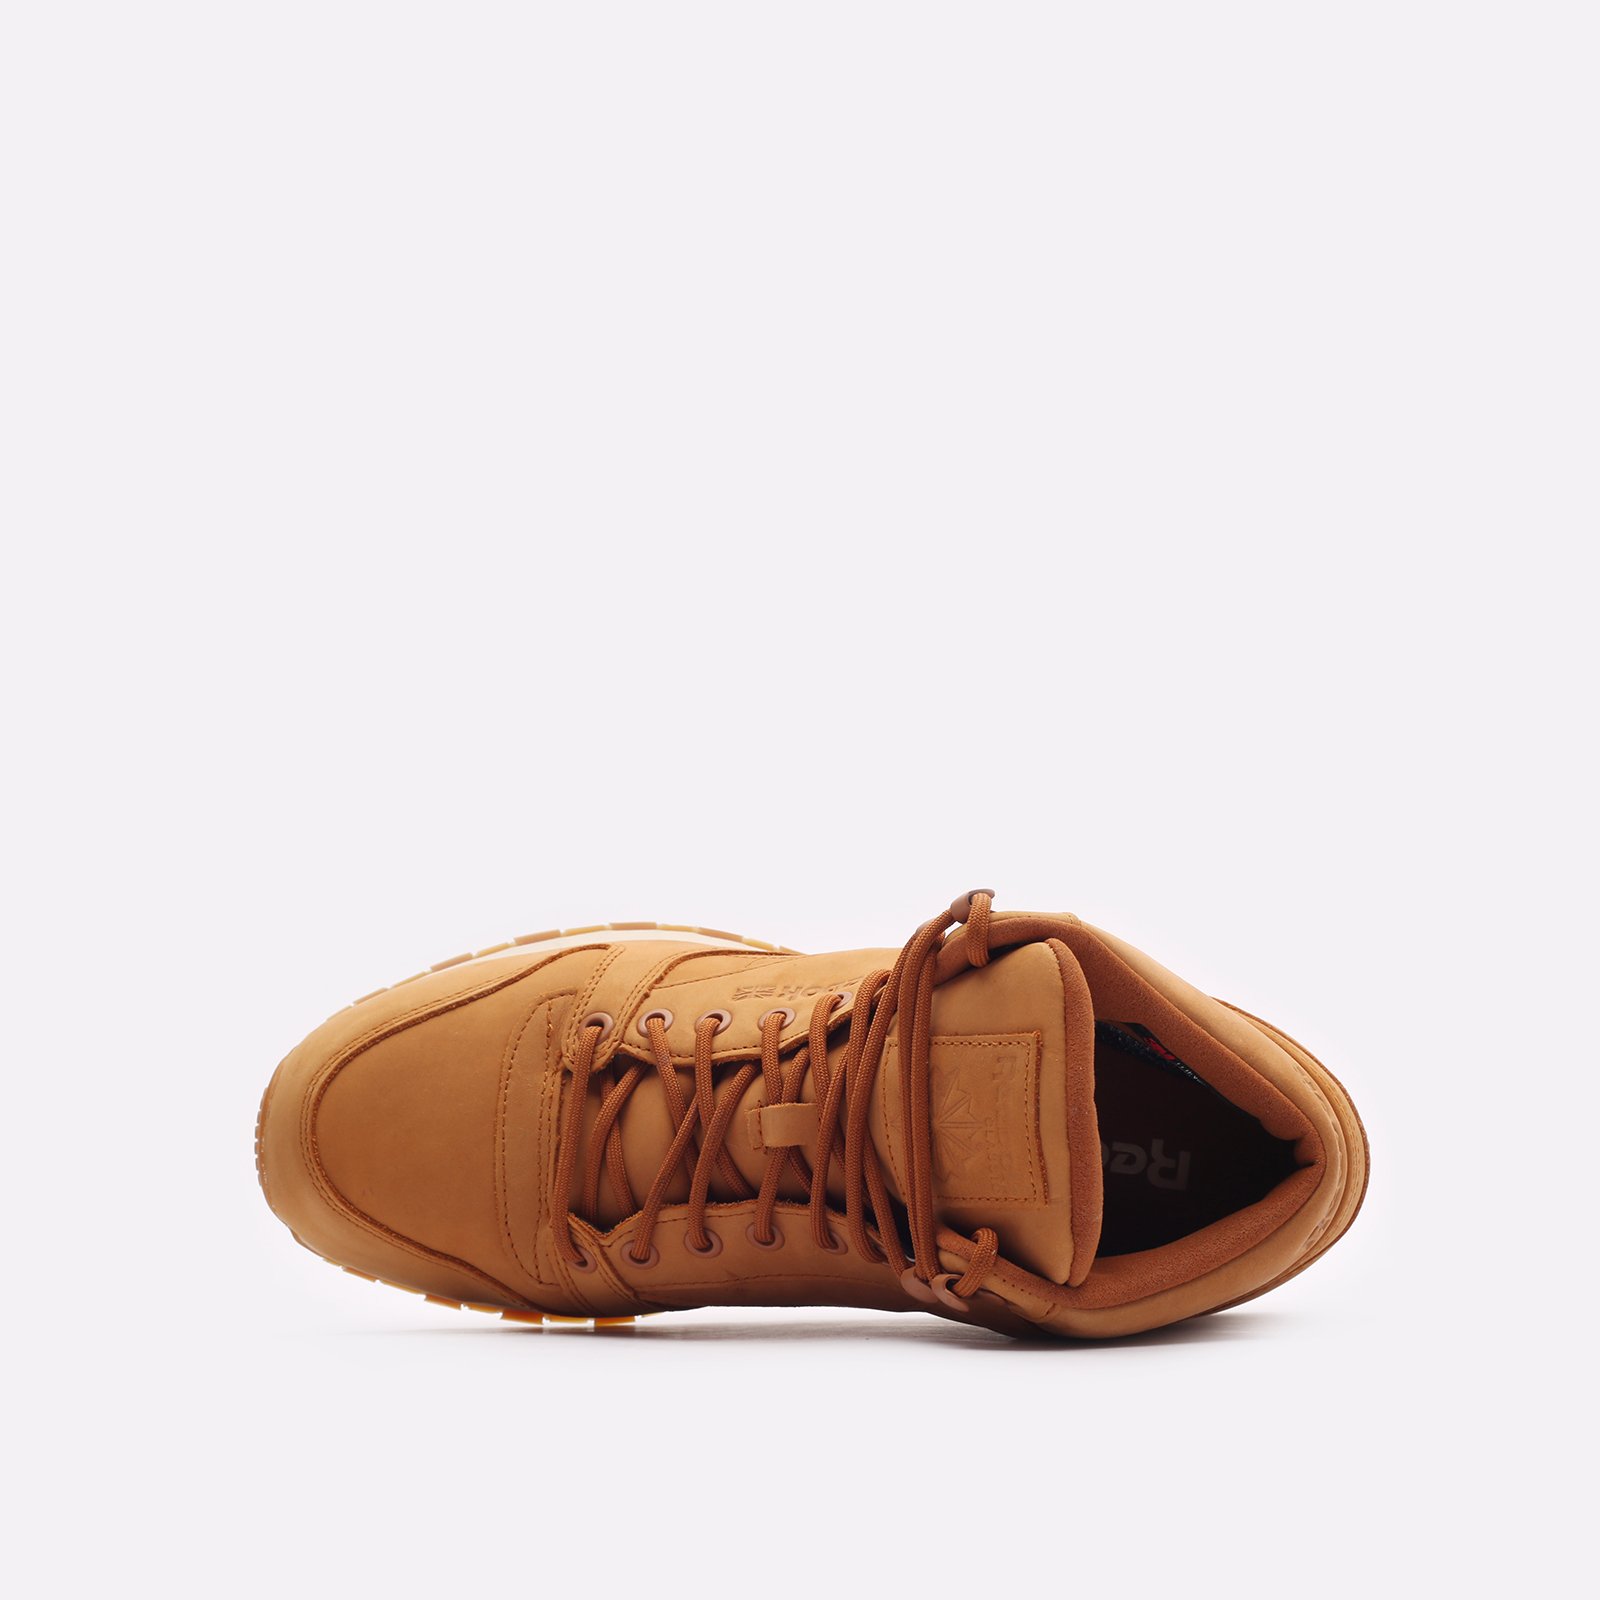 мужские кроссовки Reebok Classic Leather Mid GTX-Thin  (100073817)  - цена, описание, фото 6